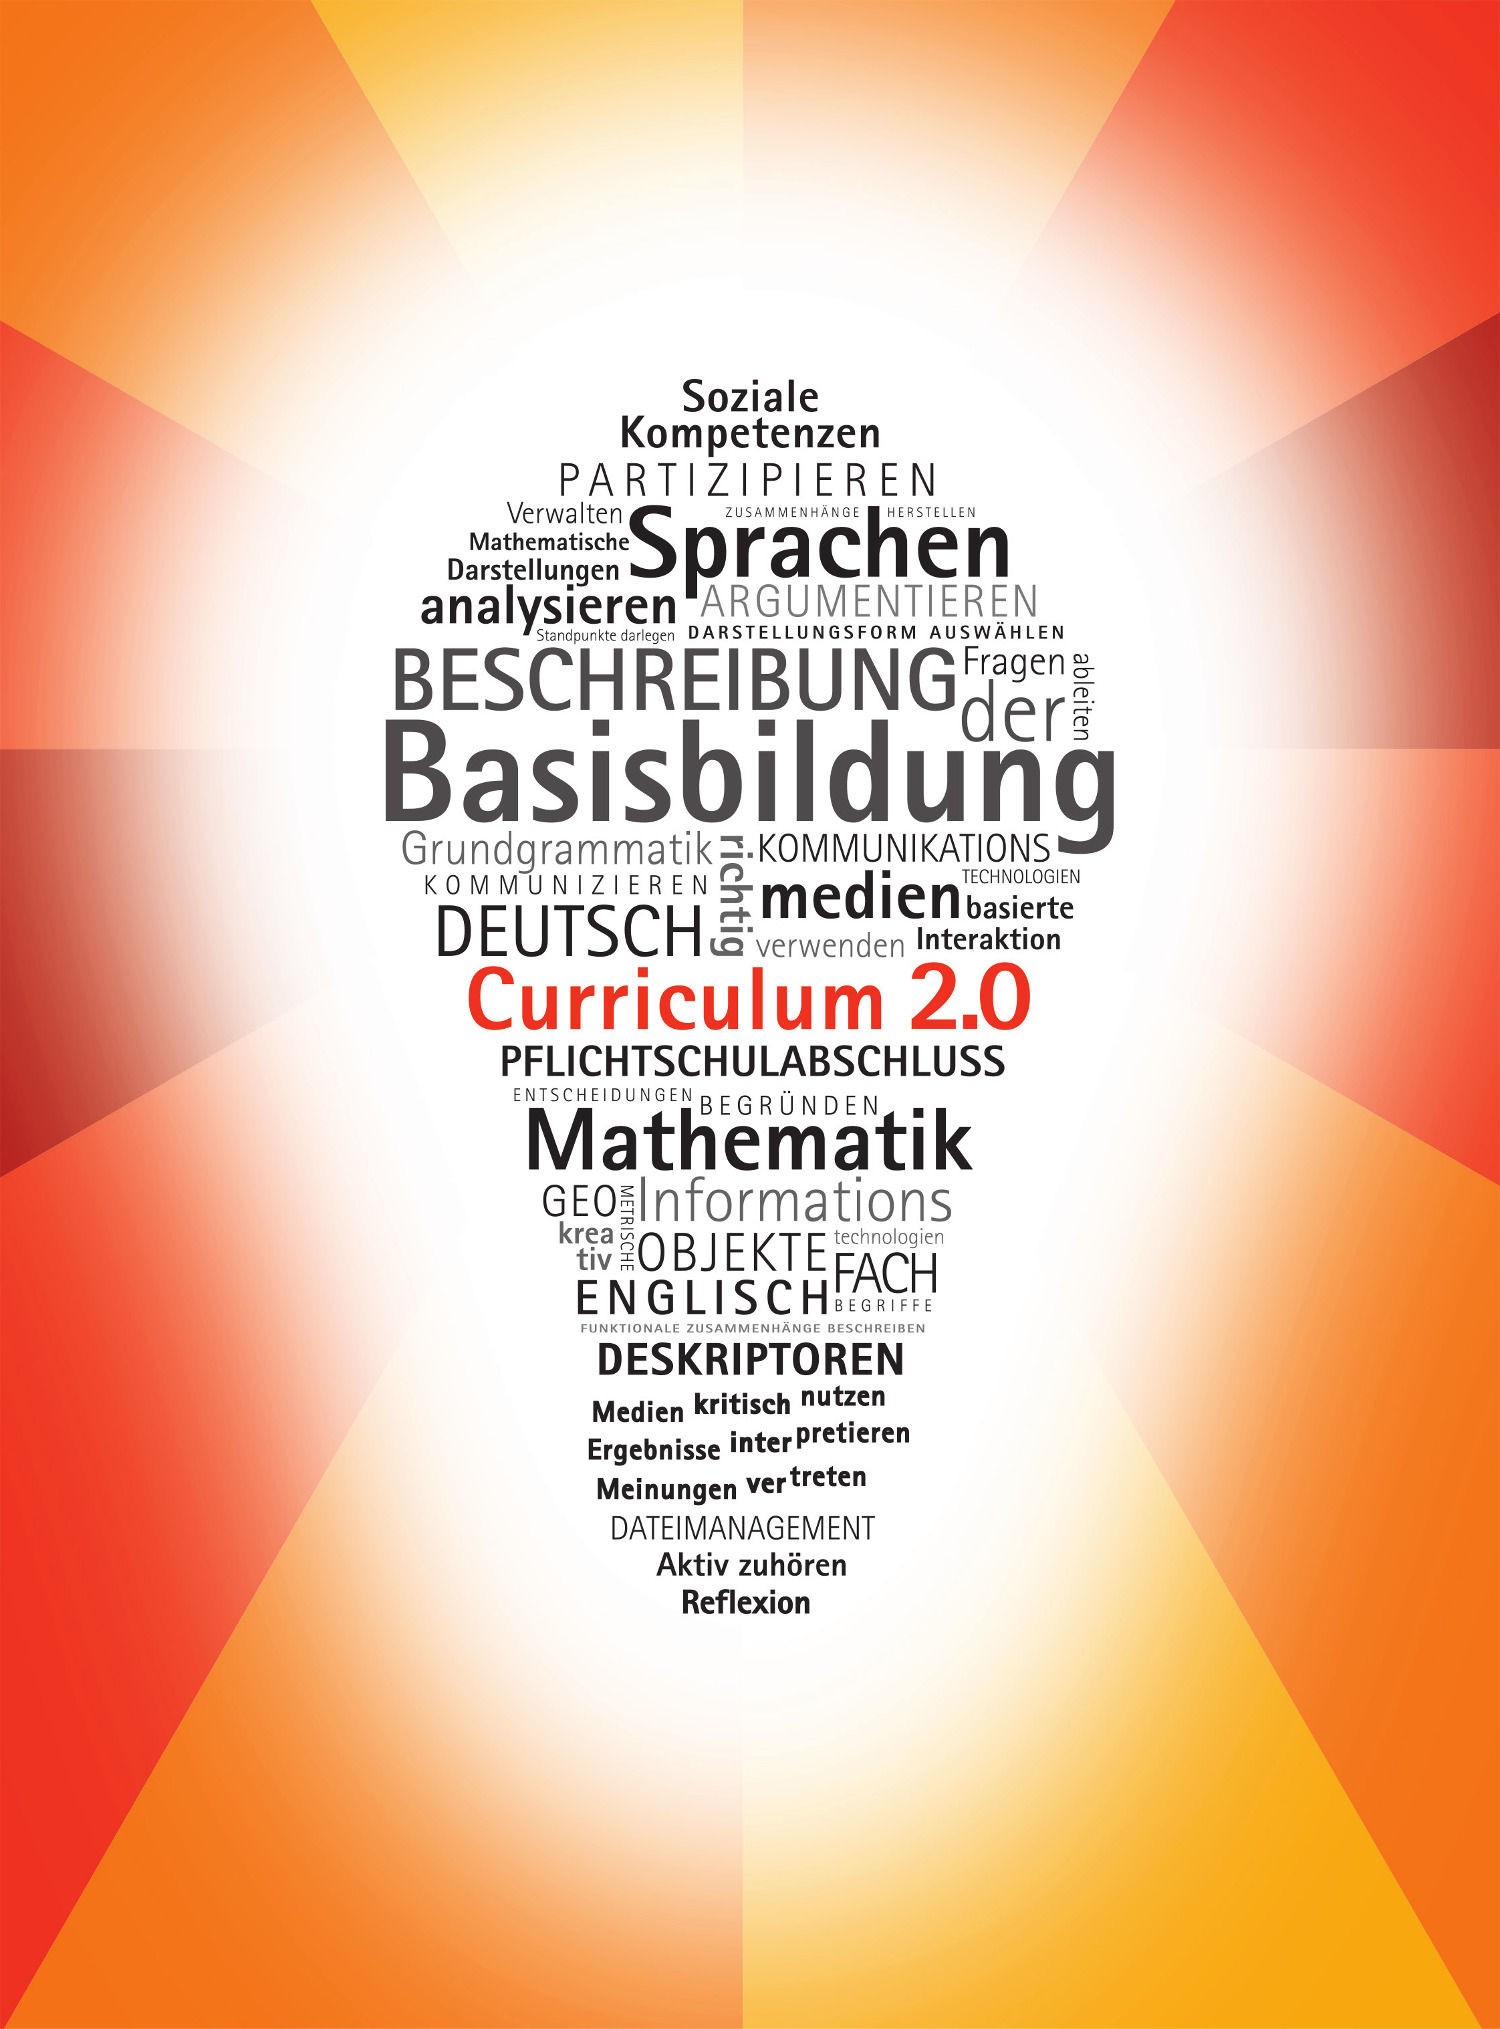 Lernergebnisorientierte Beschreibung der Basisbildung (Curriculum 2.0)Curruculum 2.0